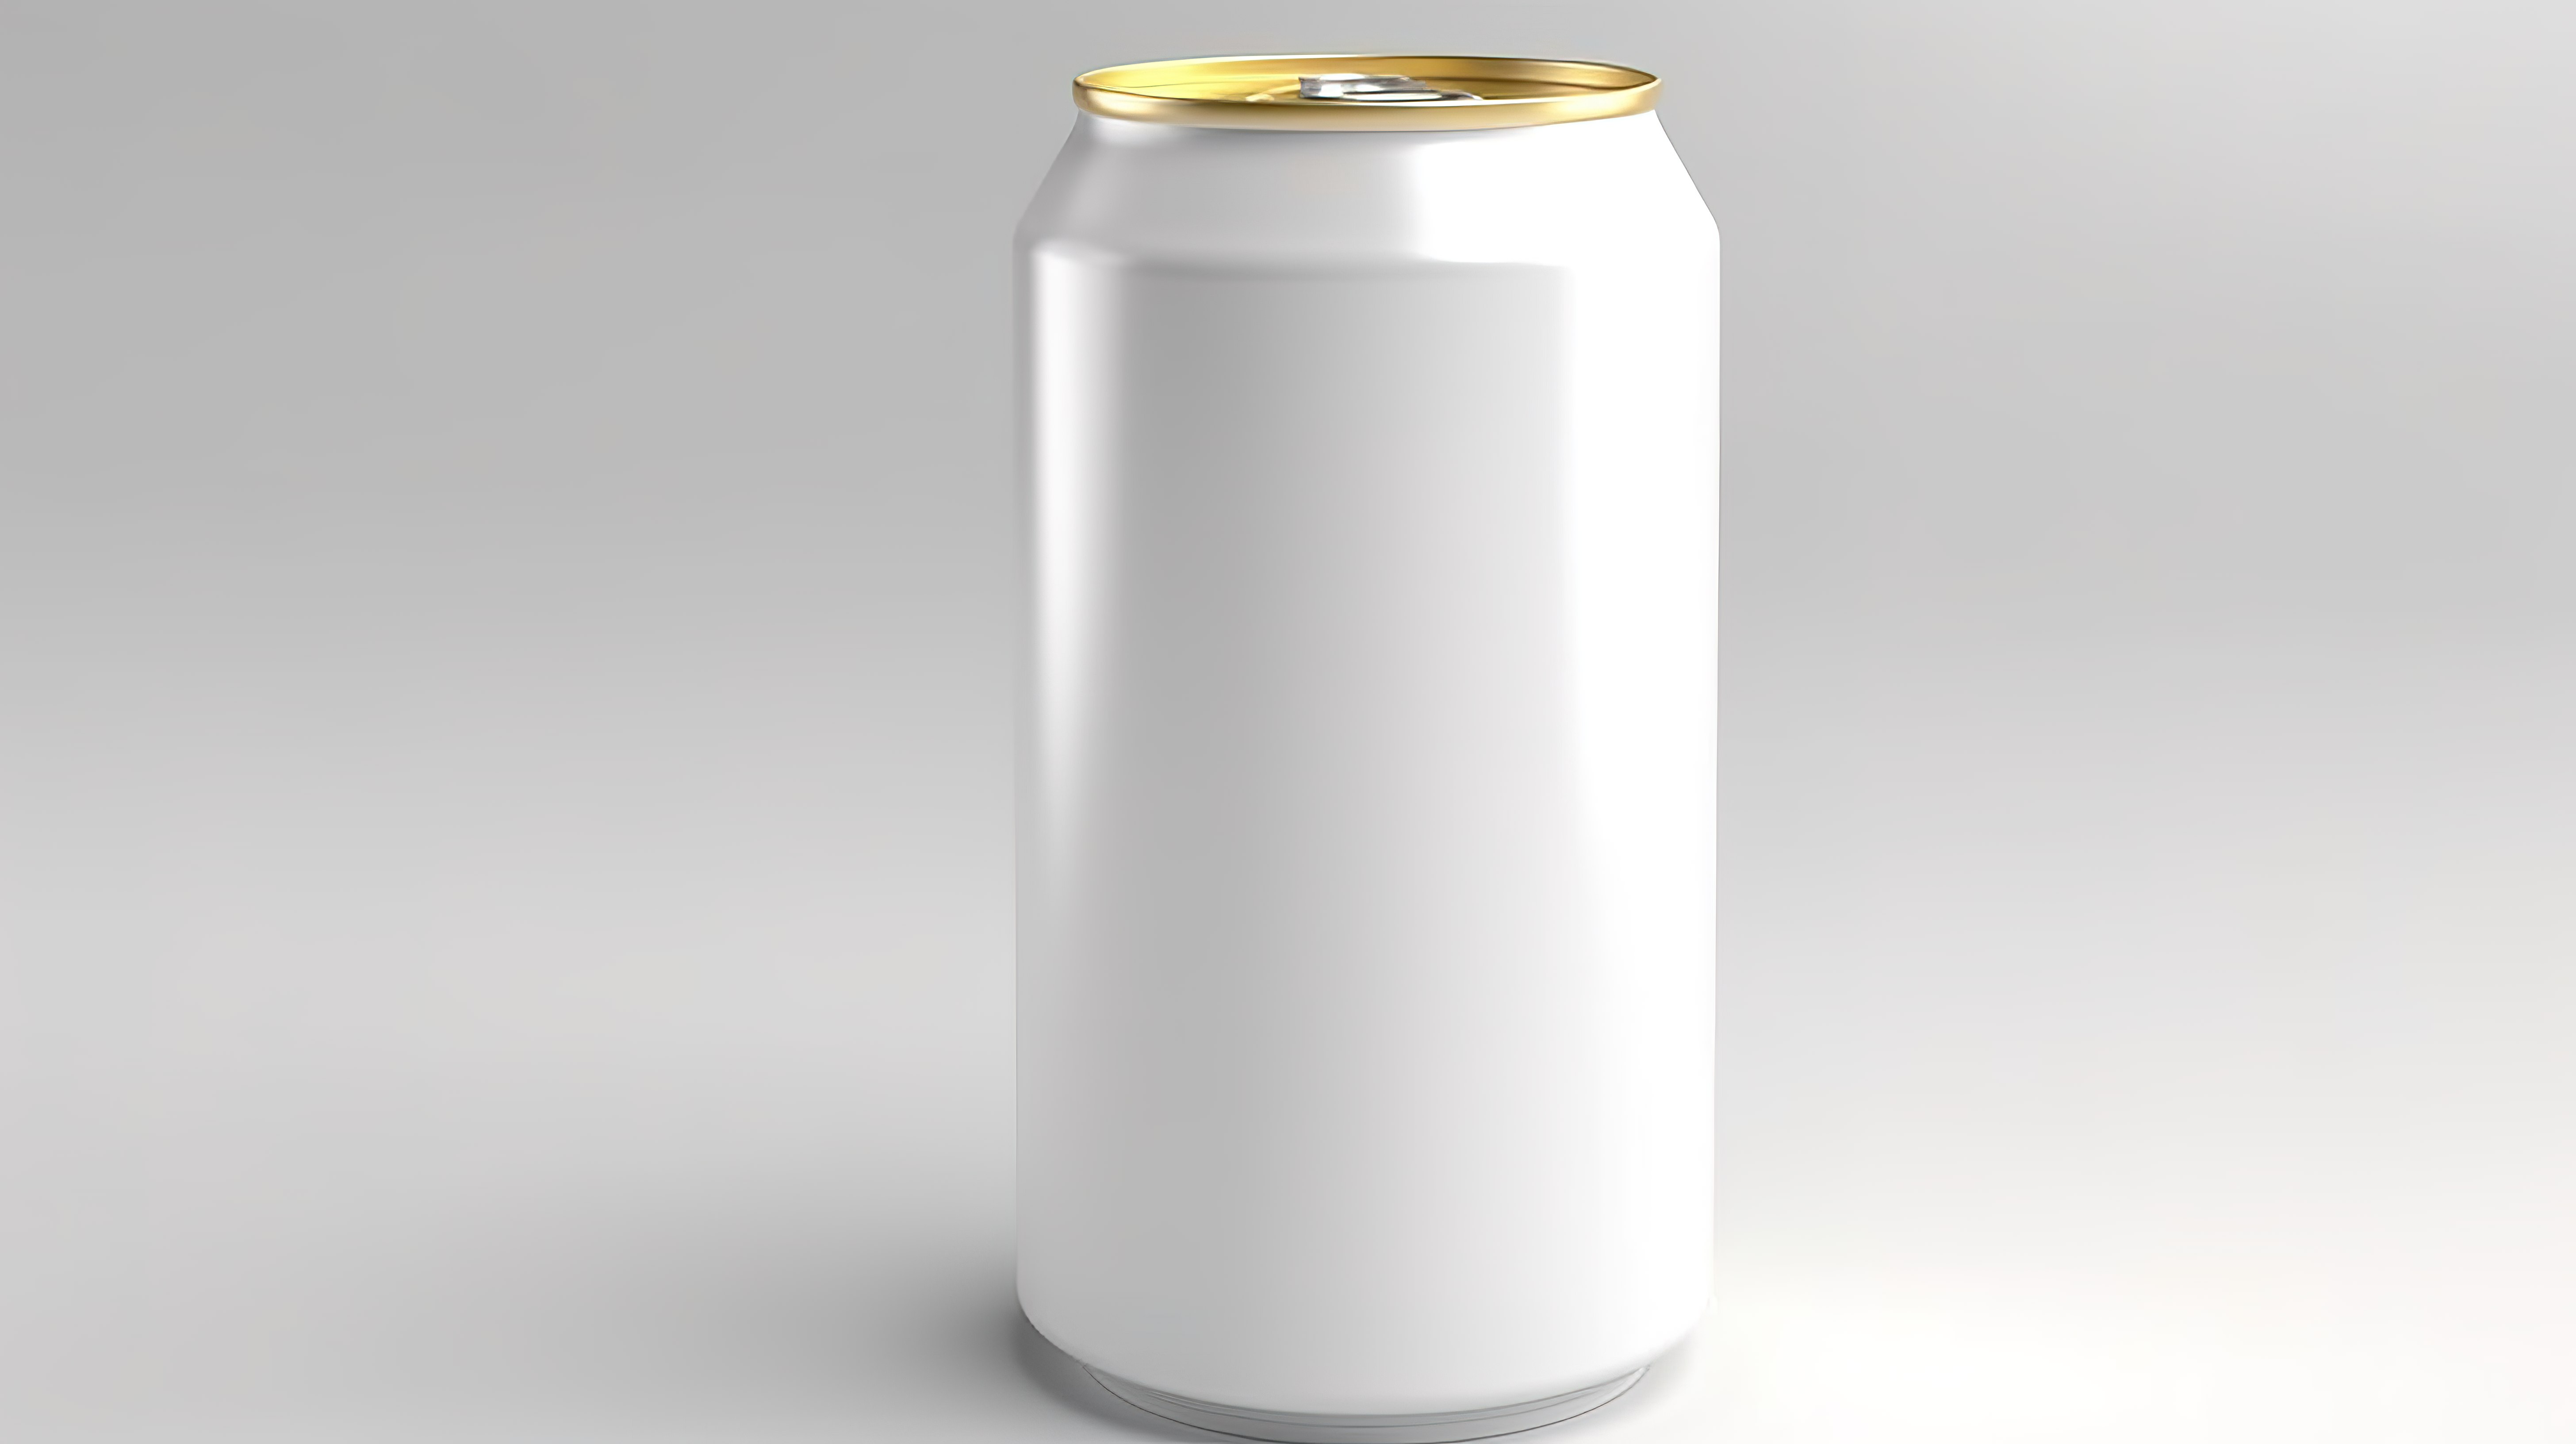 铝制啤酒和饮料罐隔离模型的 3D 渲染图片